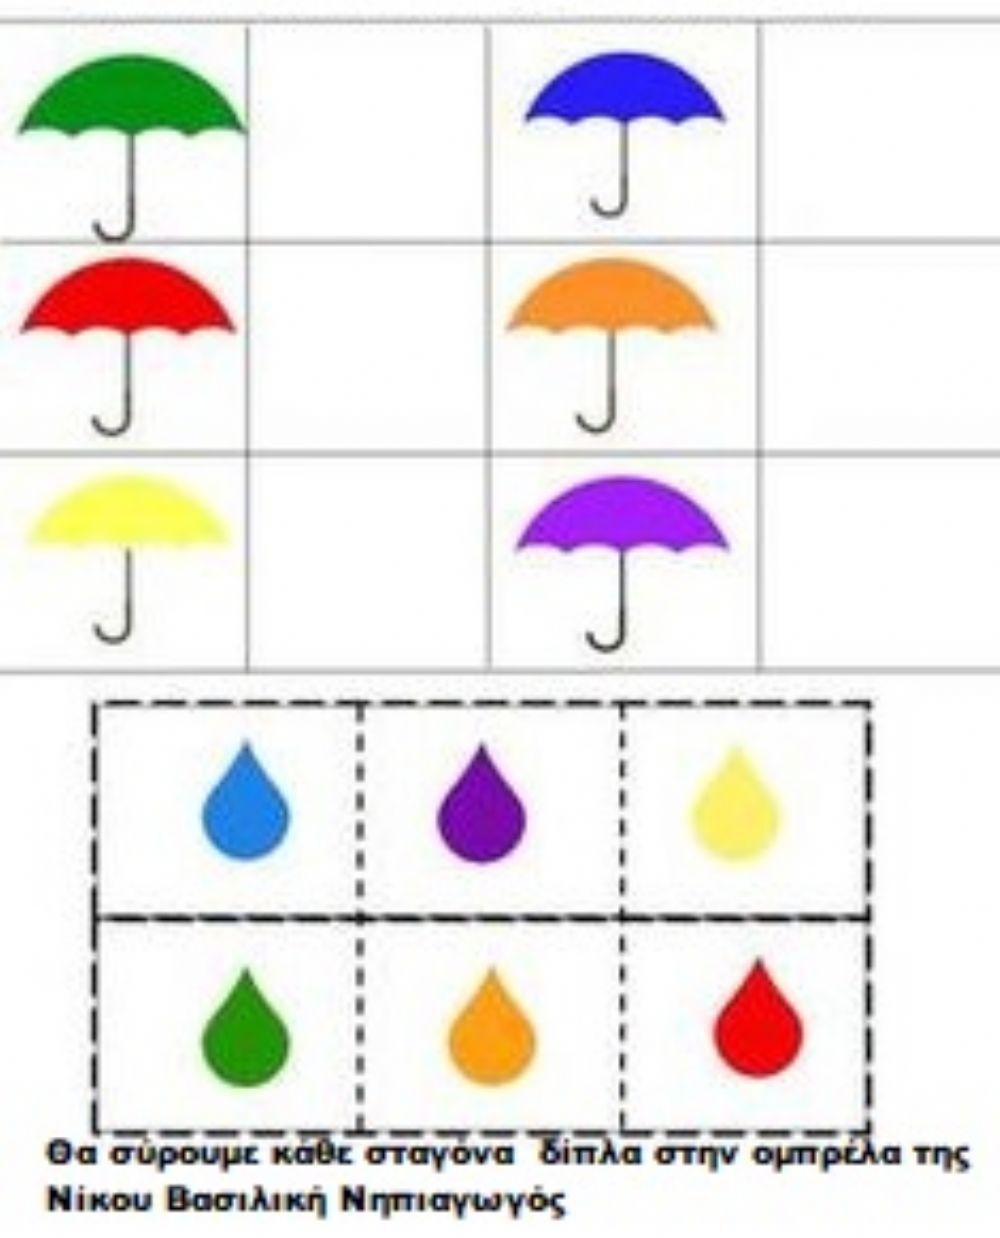 Χρωματα και ομπρελες  στο νηπιαγωγειο